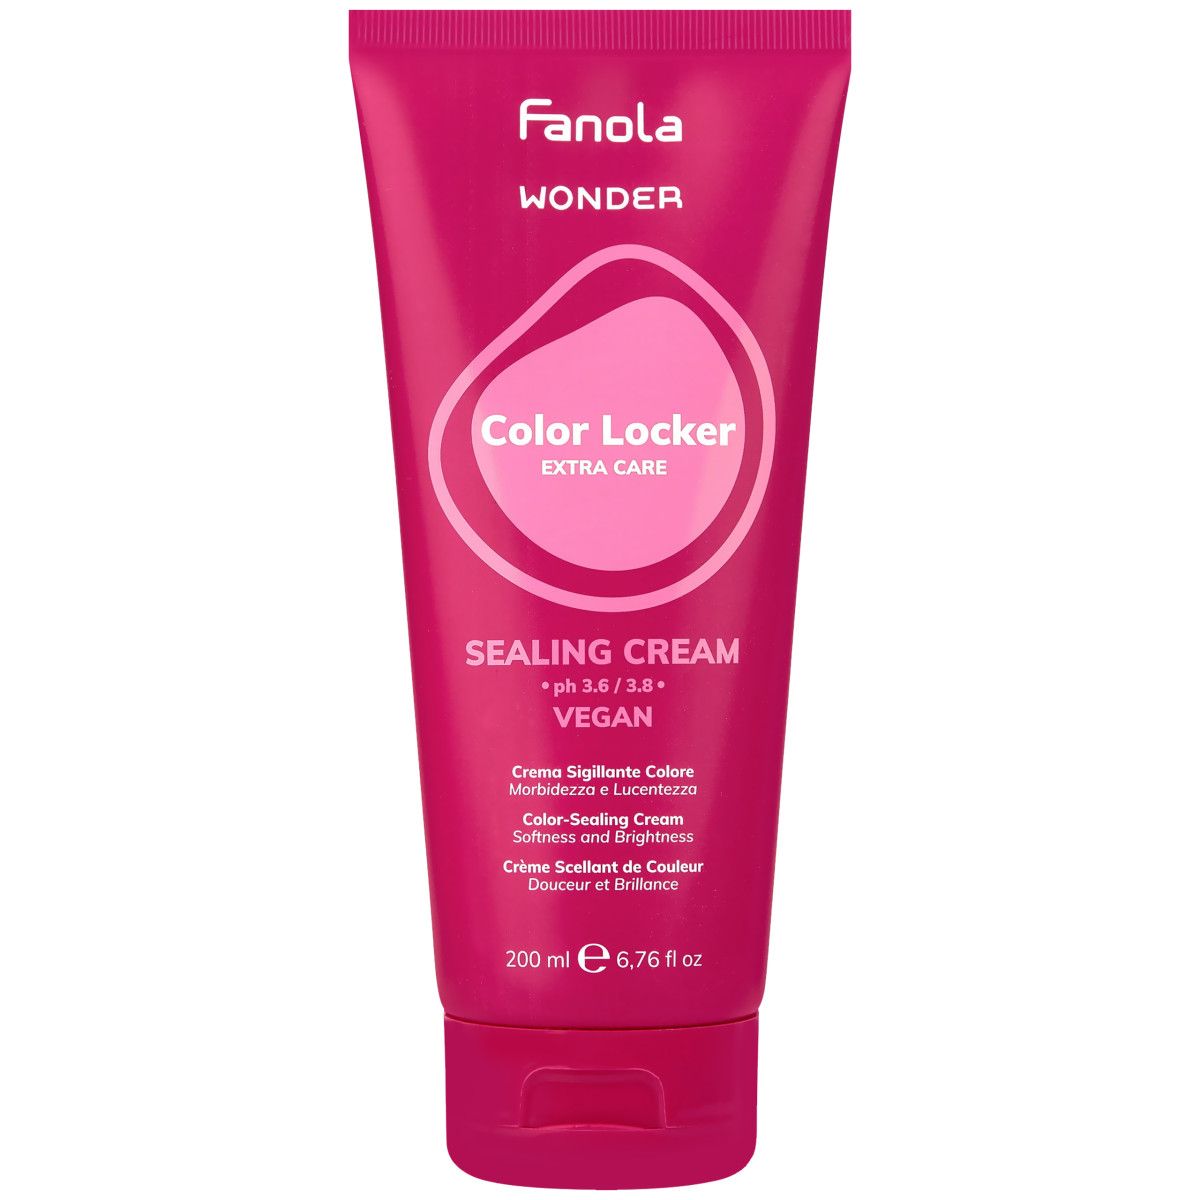 Fanola Color Locker Sealing Cream - krem do włosów farbowanych chroniący kolor, 200ml